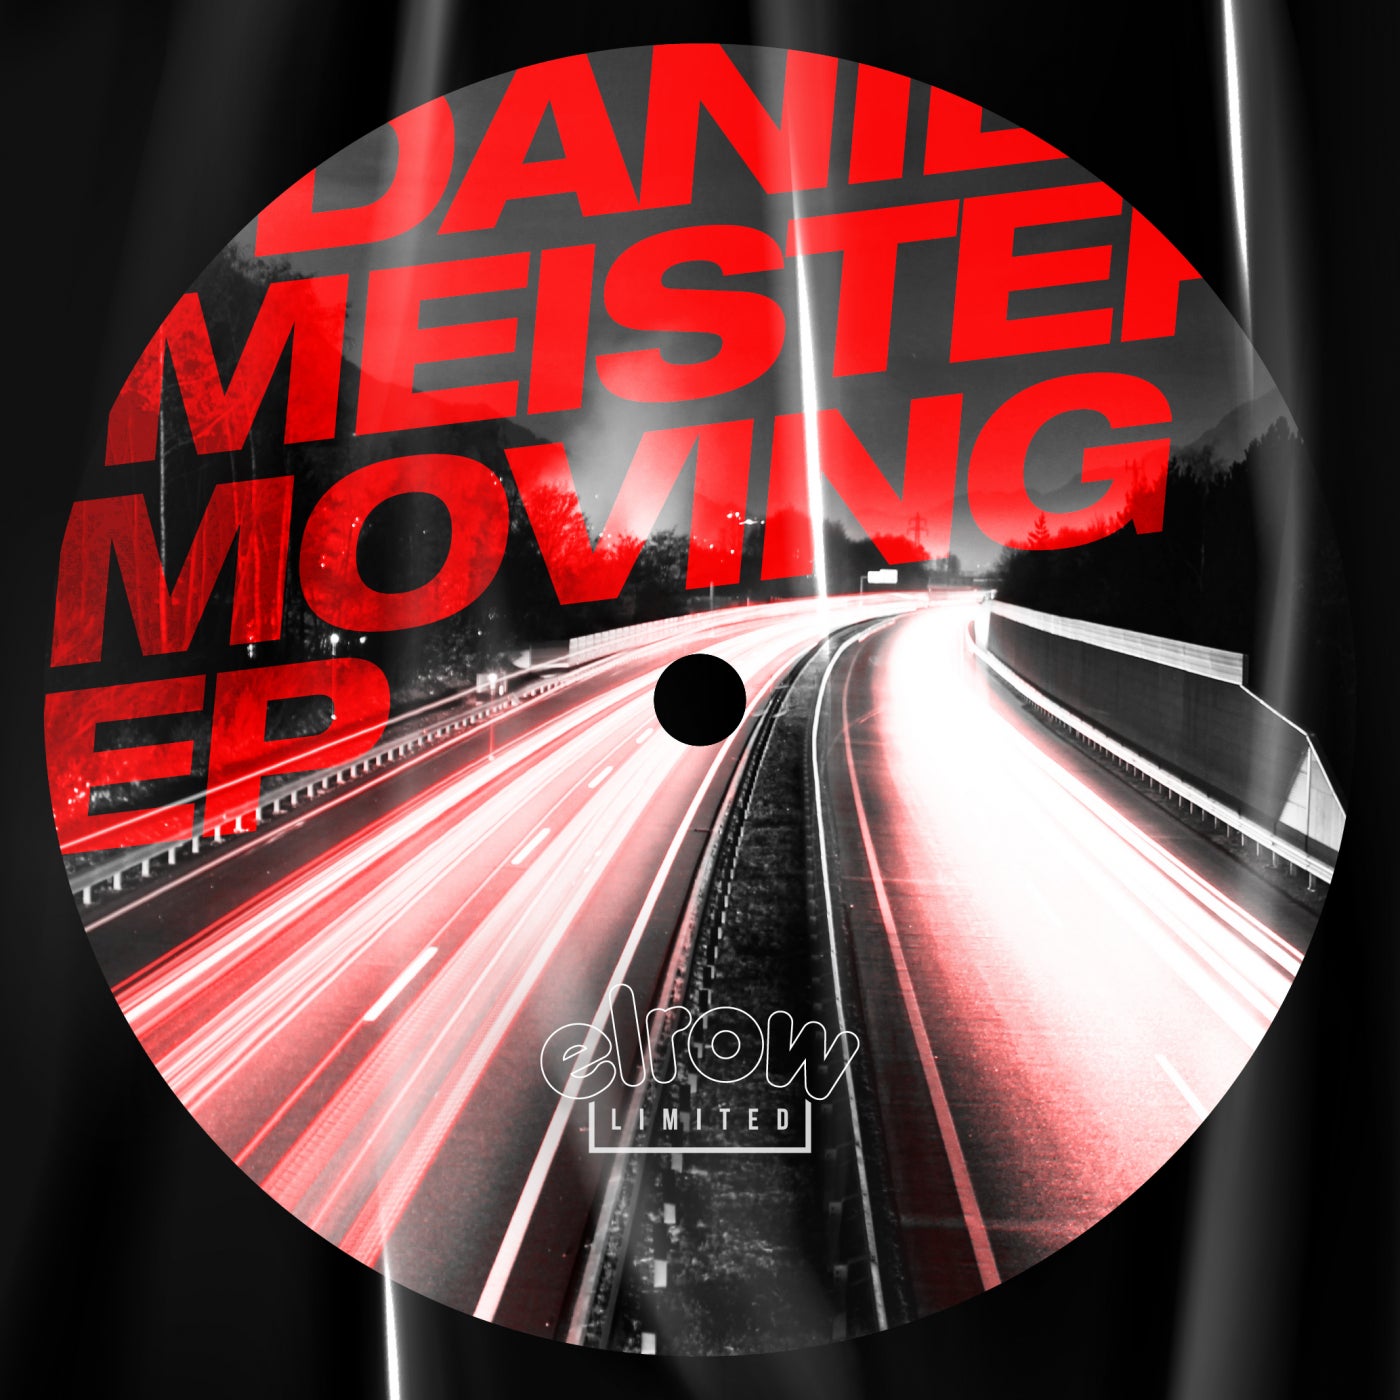 Daniel Meister – Moving EP [ERLTD022]